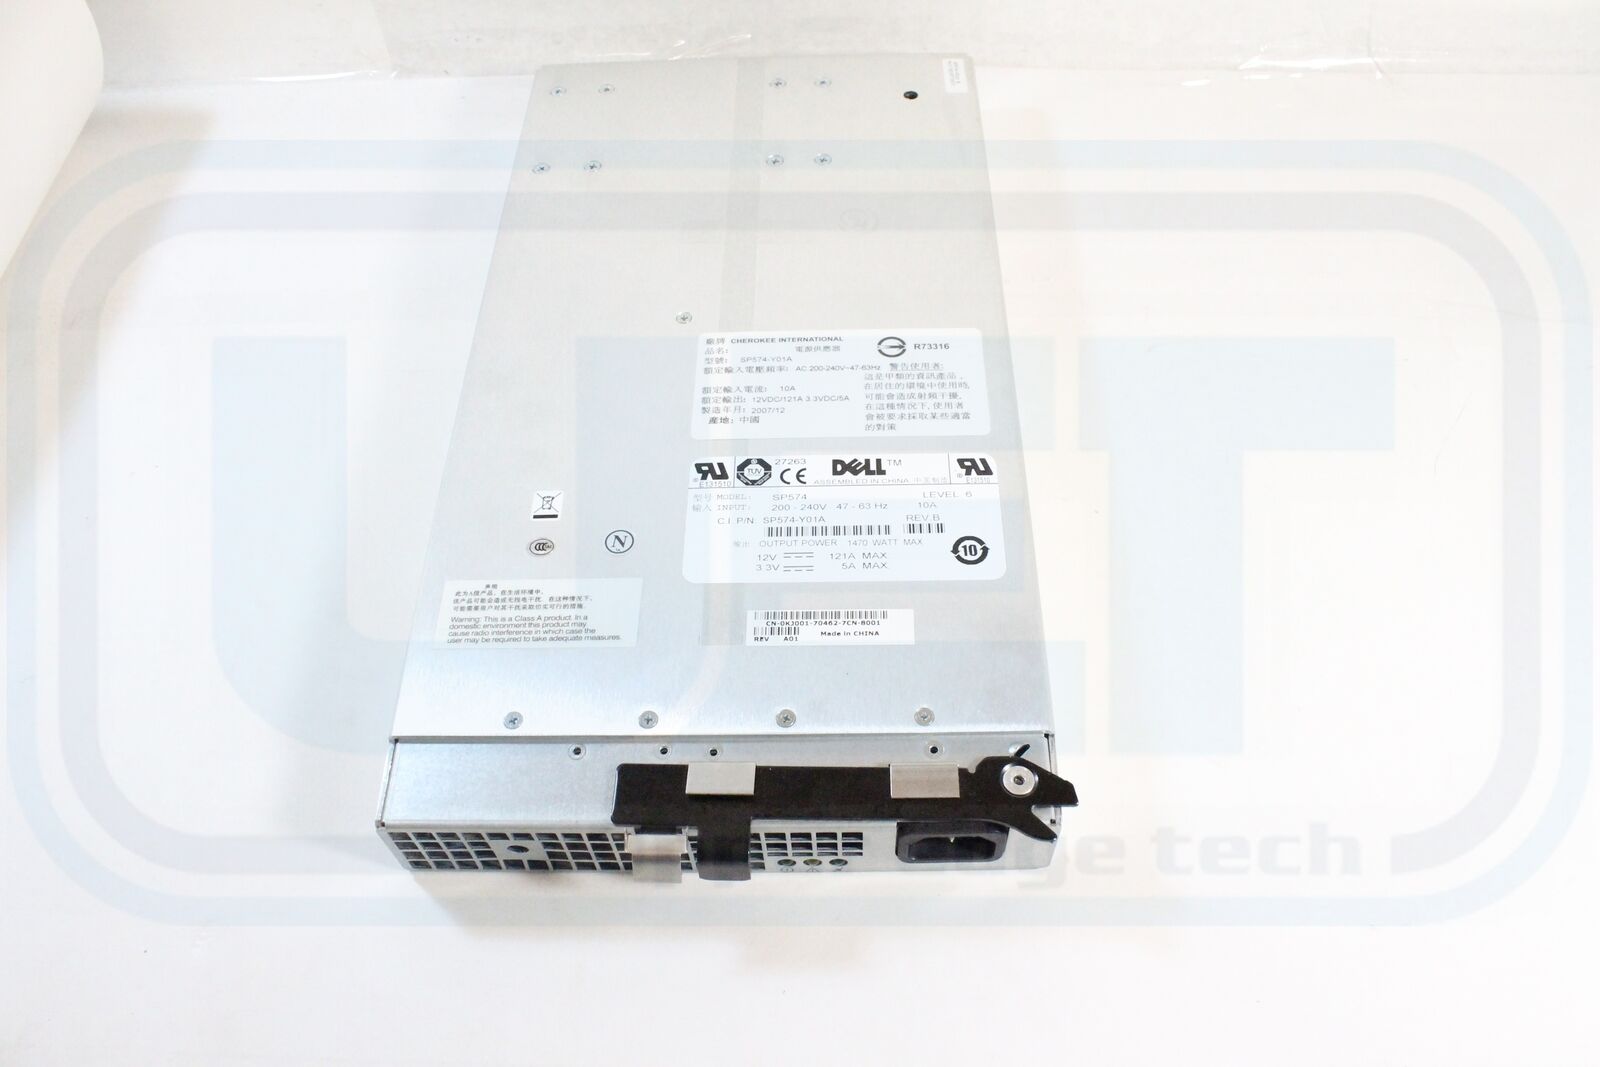 Dell PowerEdge 6850 KJ001 Power Supply PSU 1470W Tested Warranty